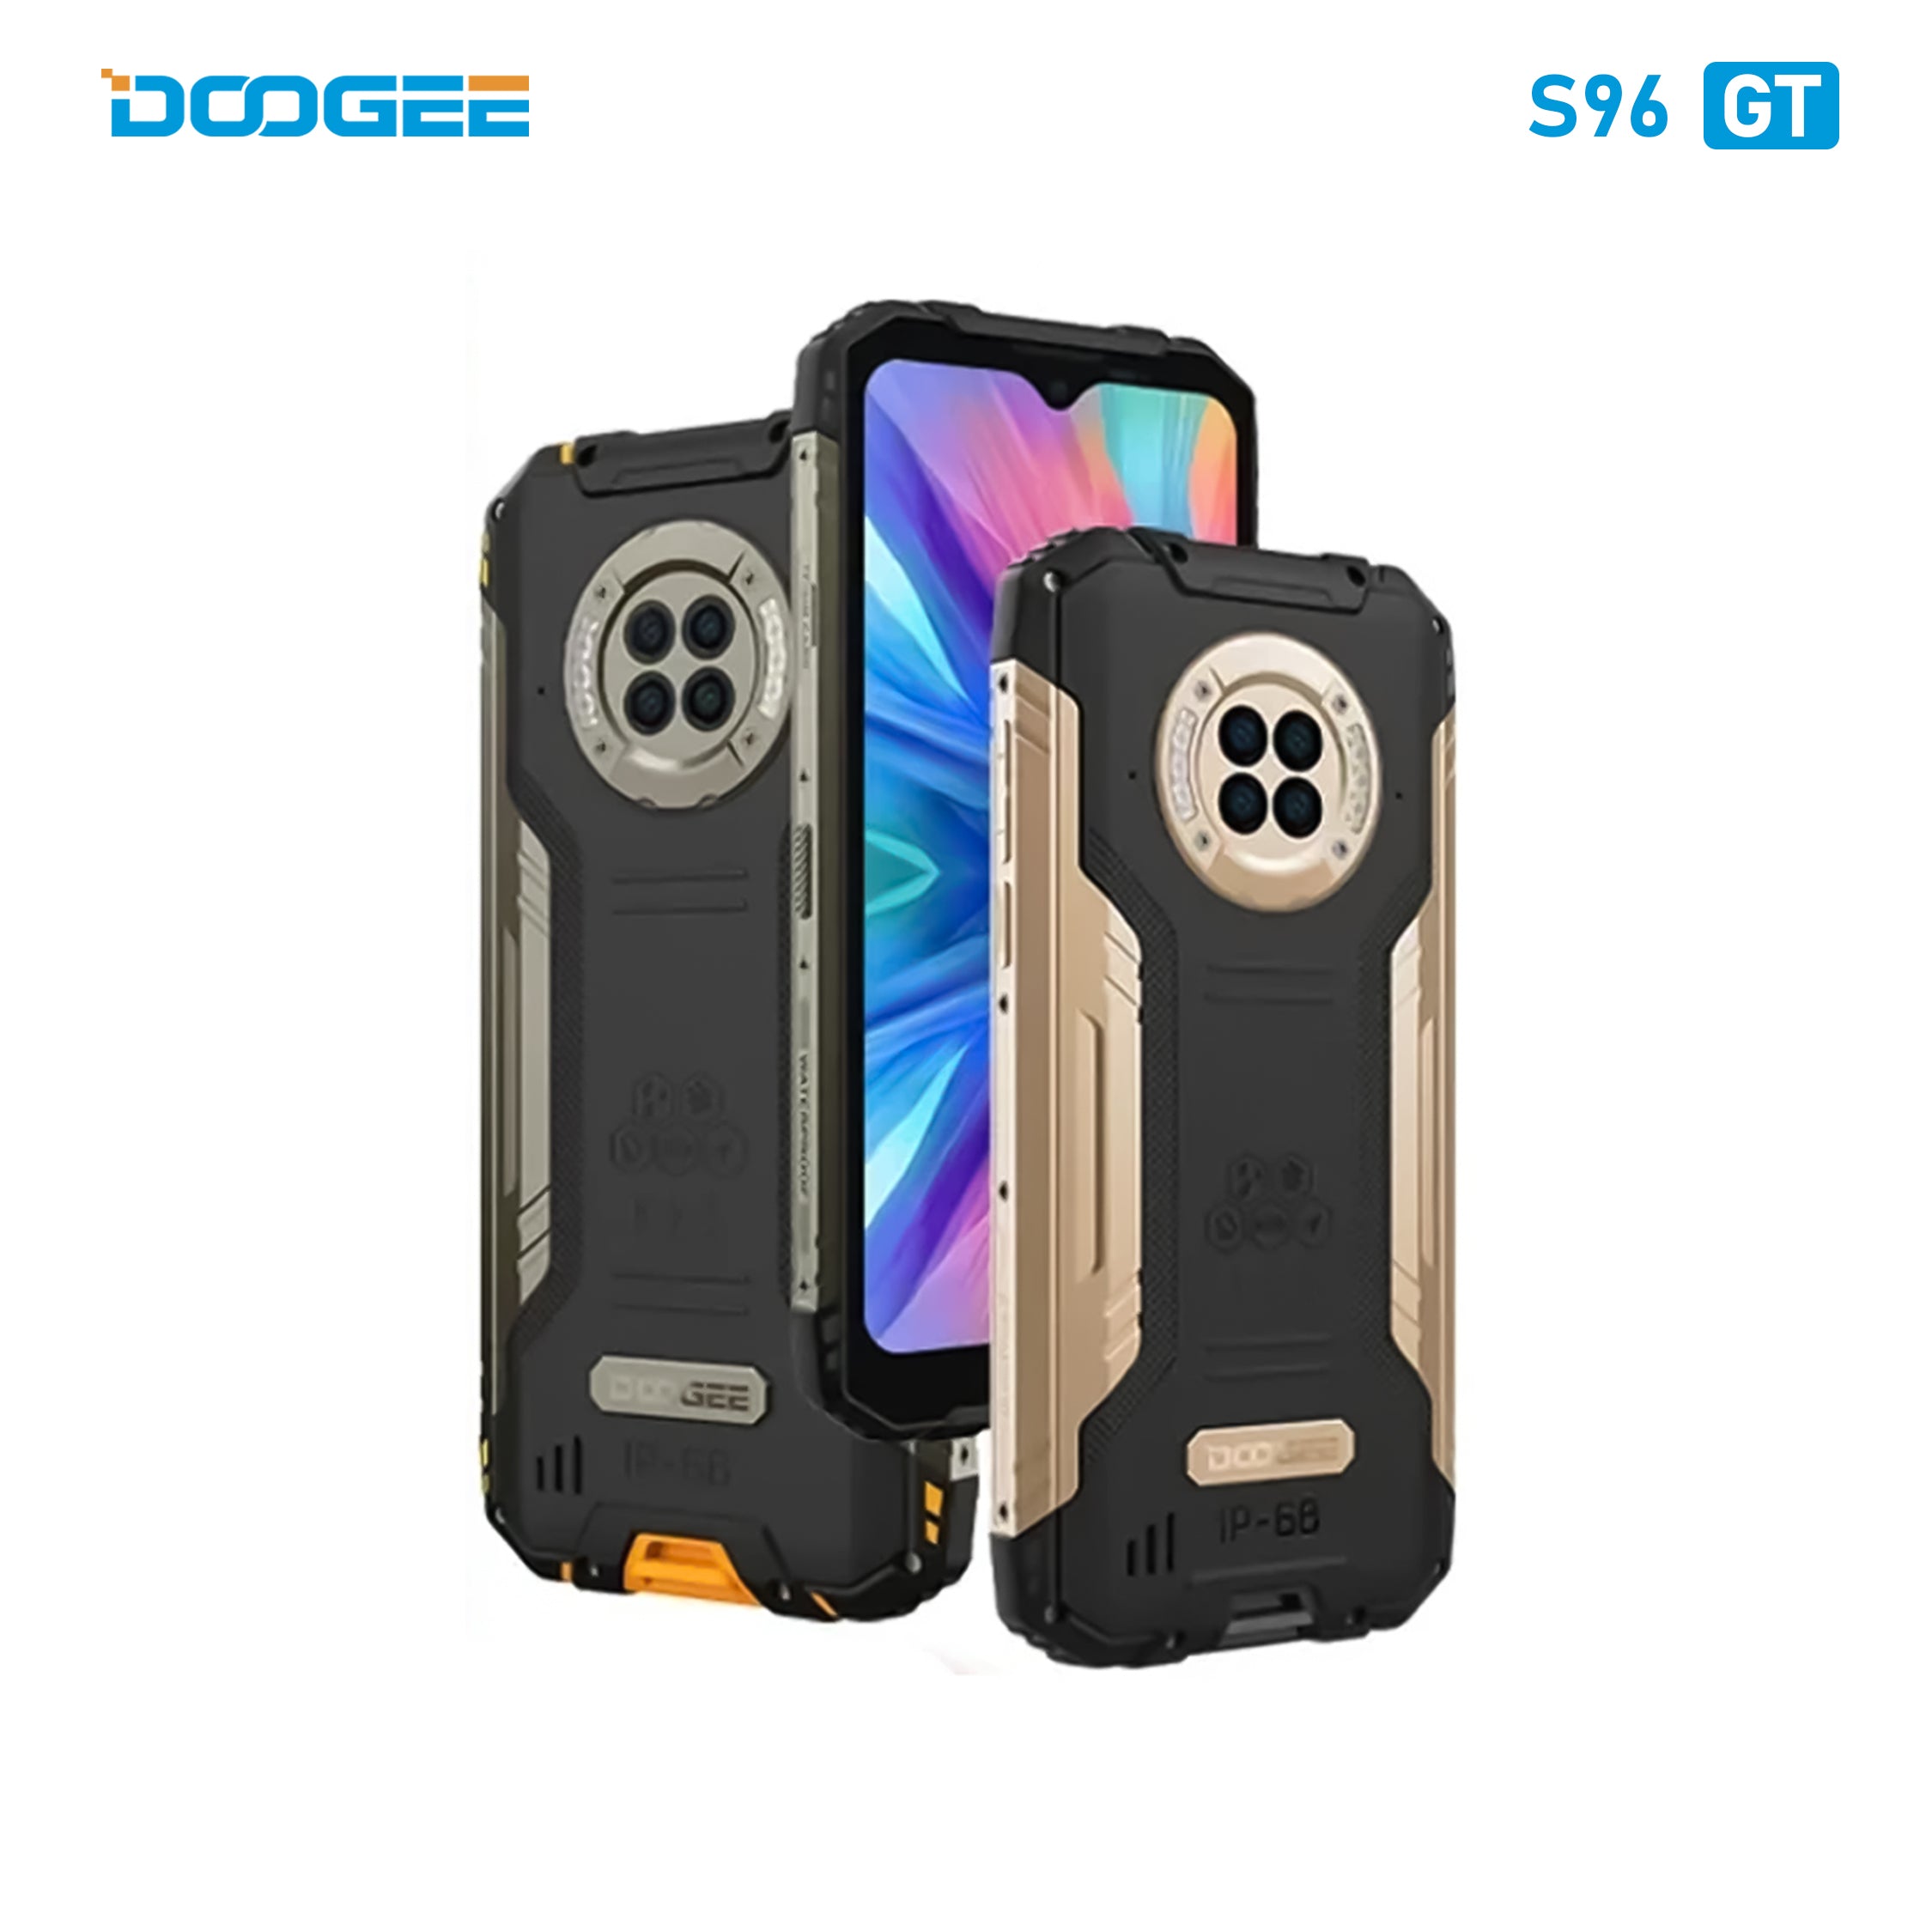 Doogee Rugged Smartphone S96GT